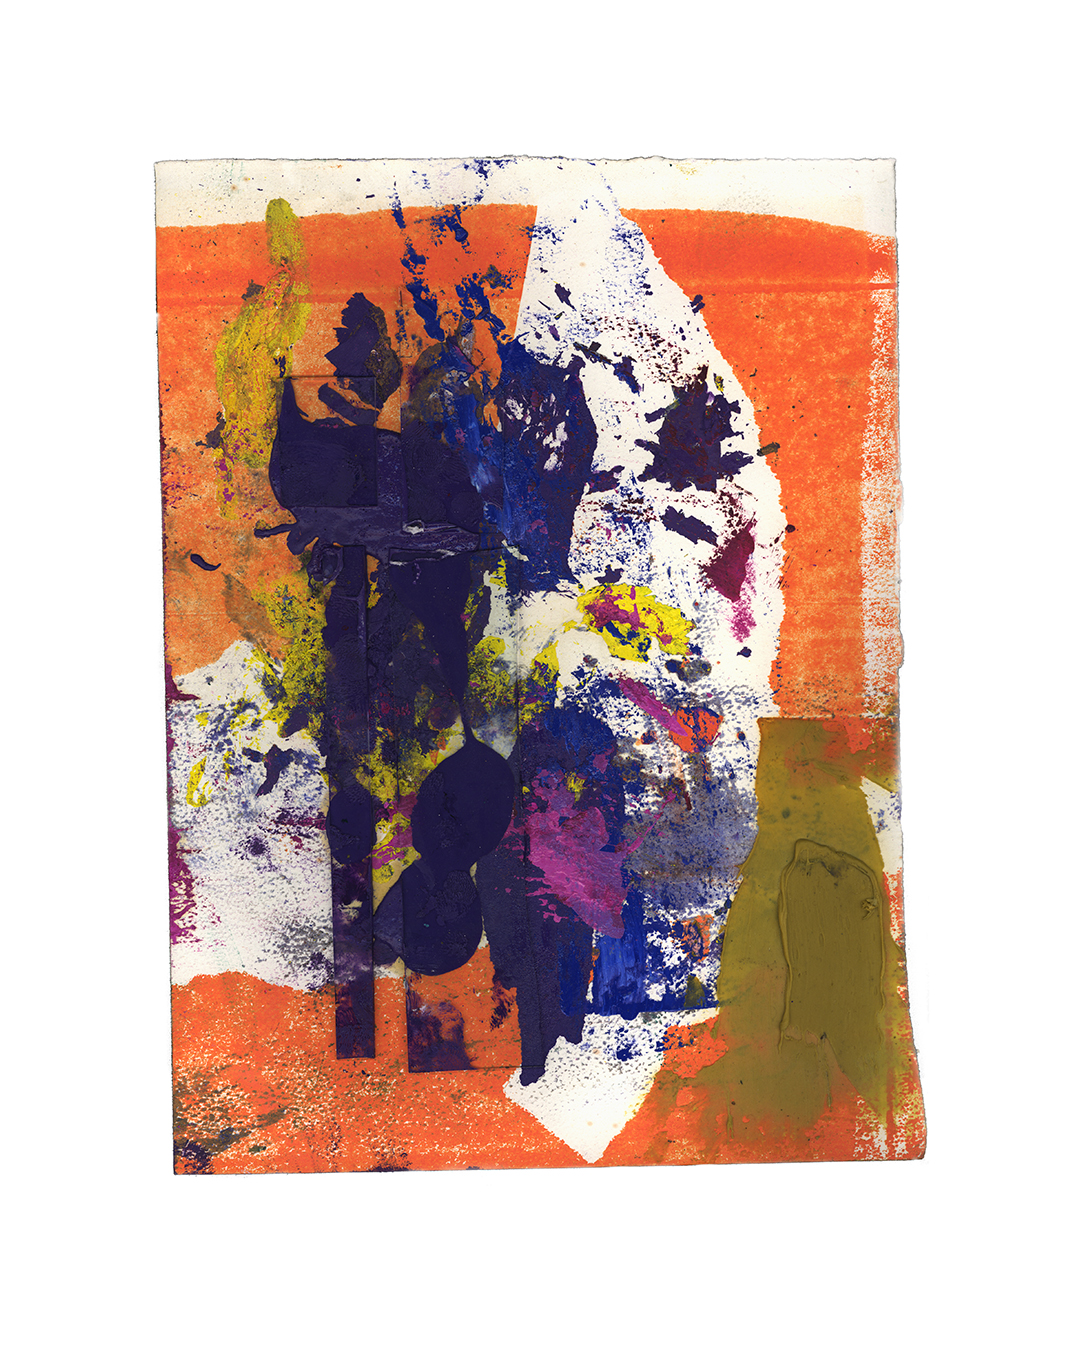 Piet Dieleman, zonder titel, 2020, schilderij, epoxyvuller, glas, olieverf, temperaverf op papier, 380 x 280 mm, €930